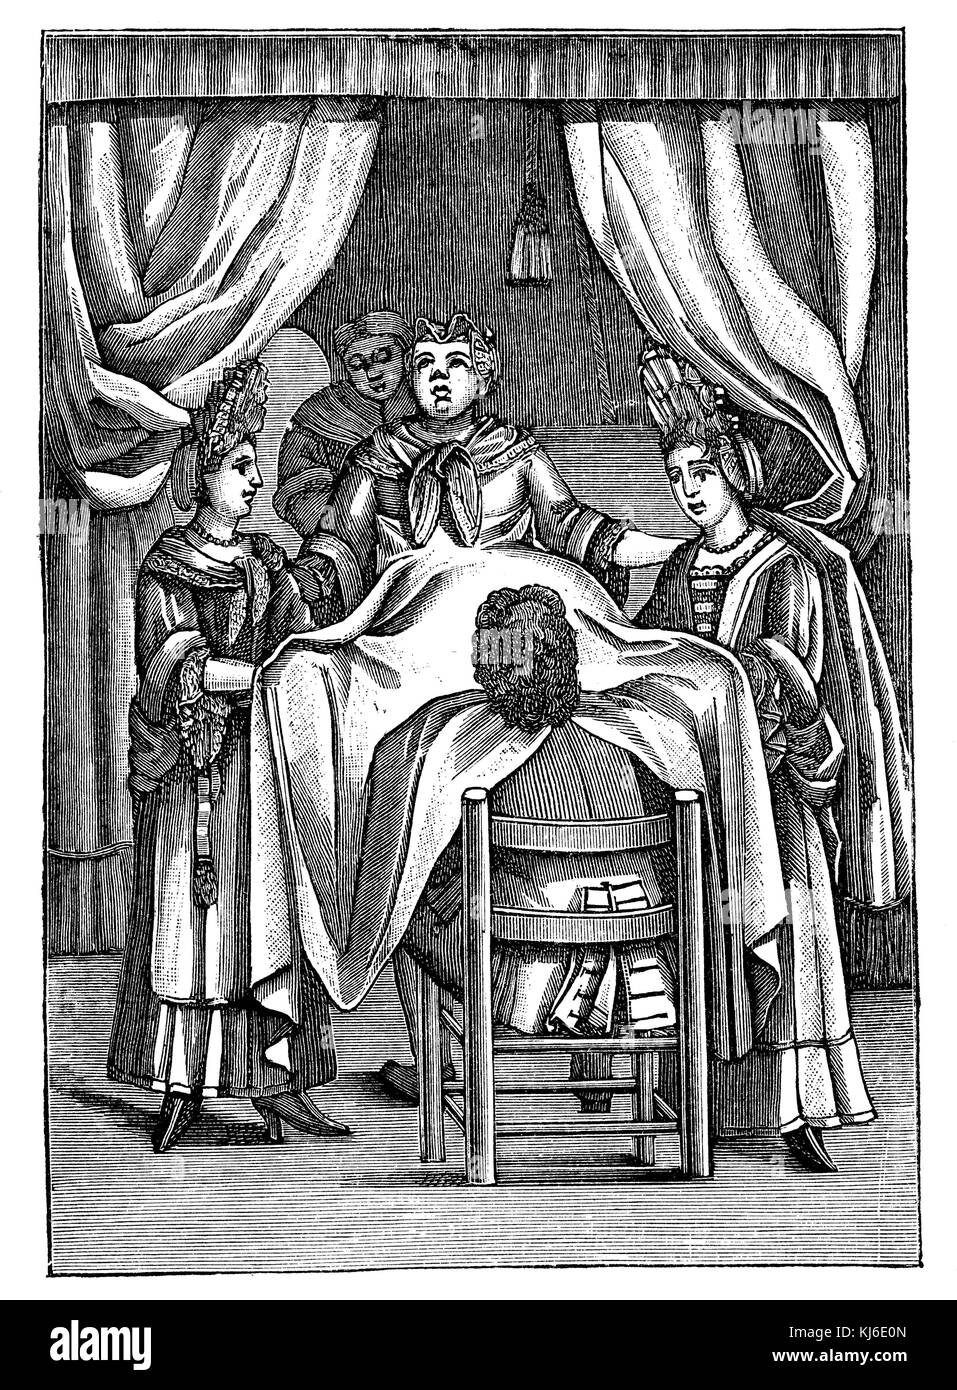 Dutch obstetrician of the 17th century, working under a blanket woman. After Samuel Janson (Holländischer Geburtshelfer des 17. Jahrhunderts, unter einem Laken eine Frau entbindend. Nach Samuel Janson) Stock Photo